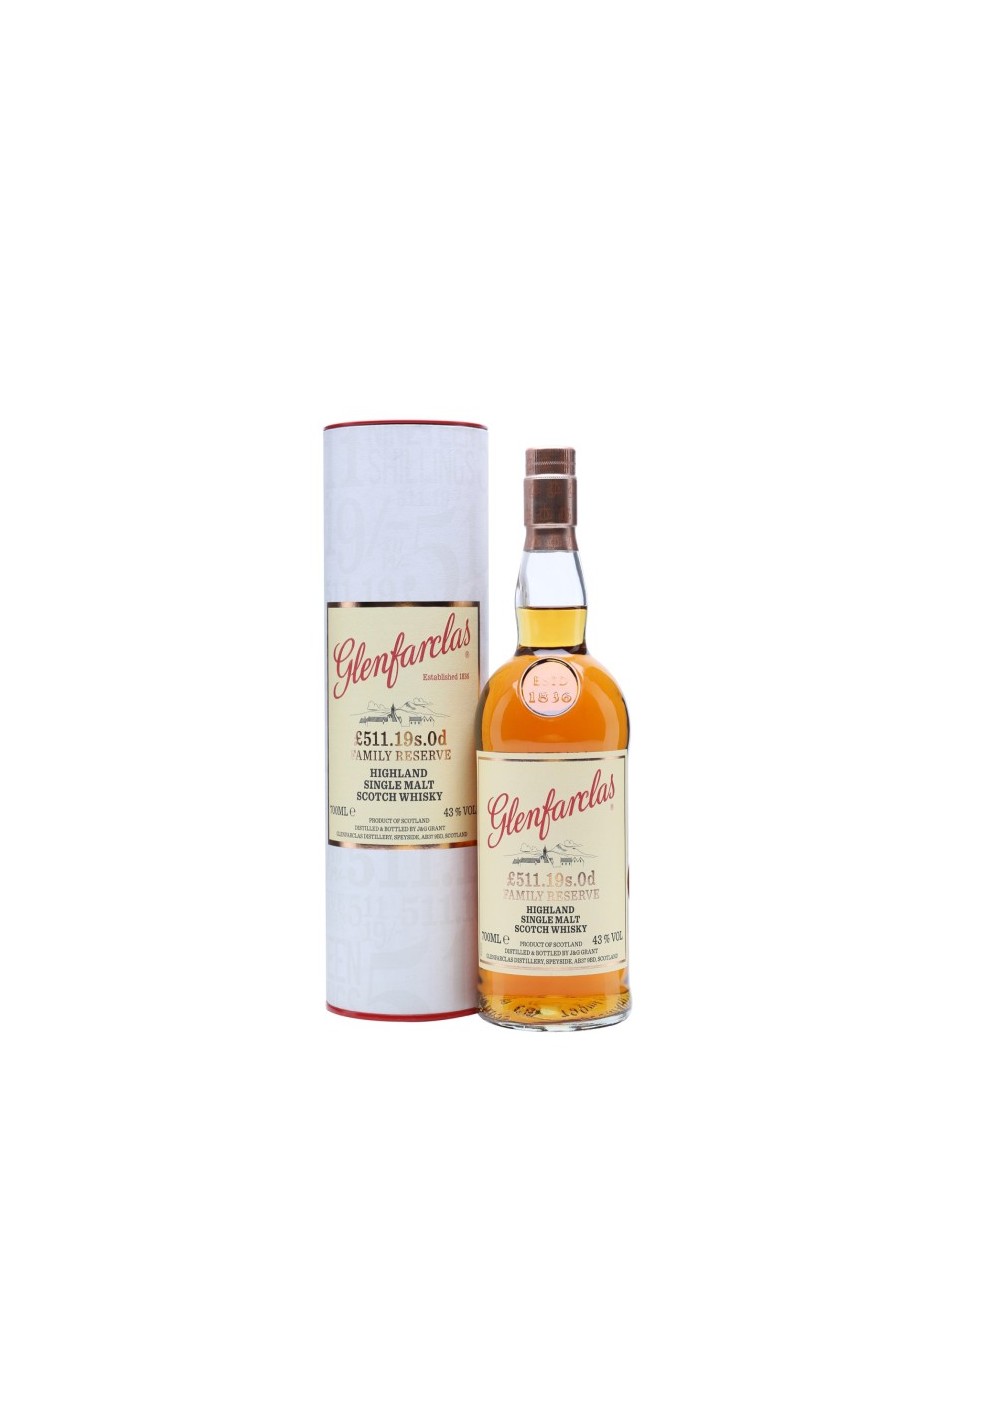 Whisky Ecossais Glenfarclas « £511.19s.0d  70cl - 43%